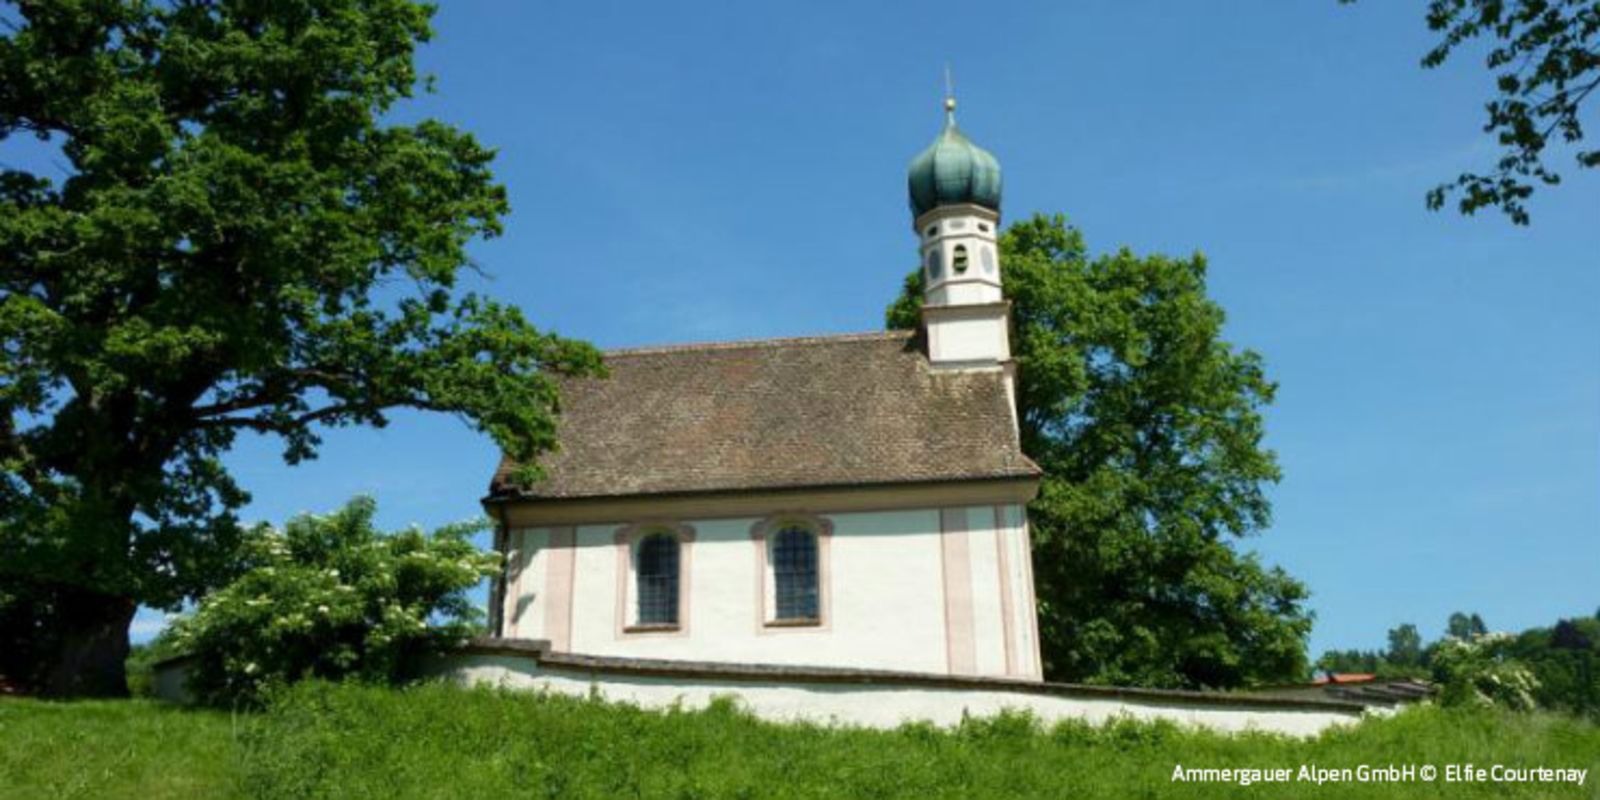 St. Georg Kirche Murnau